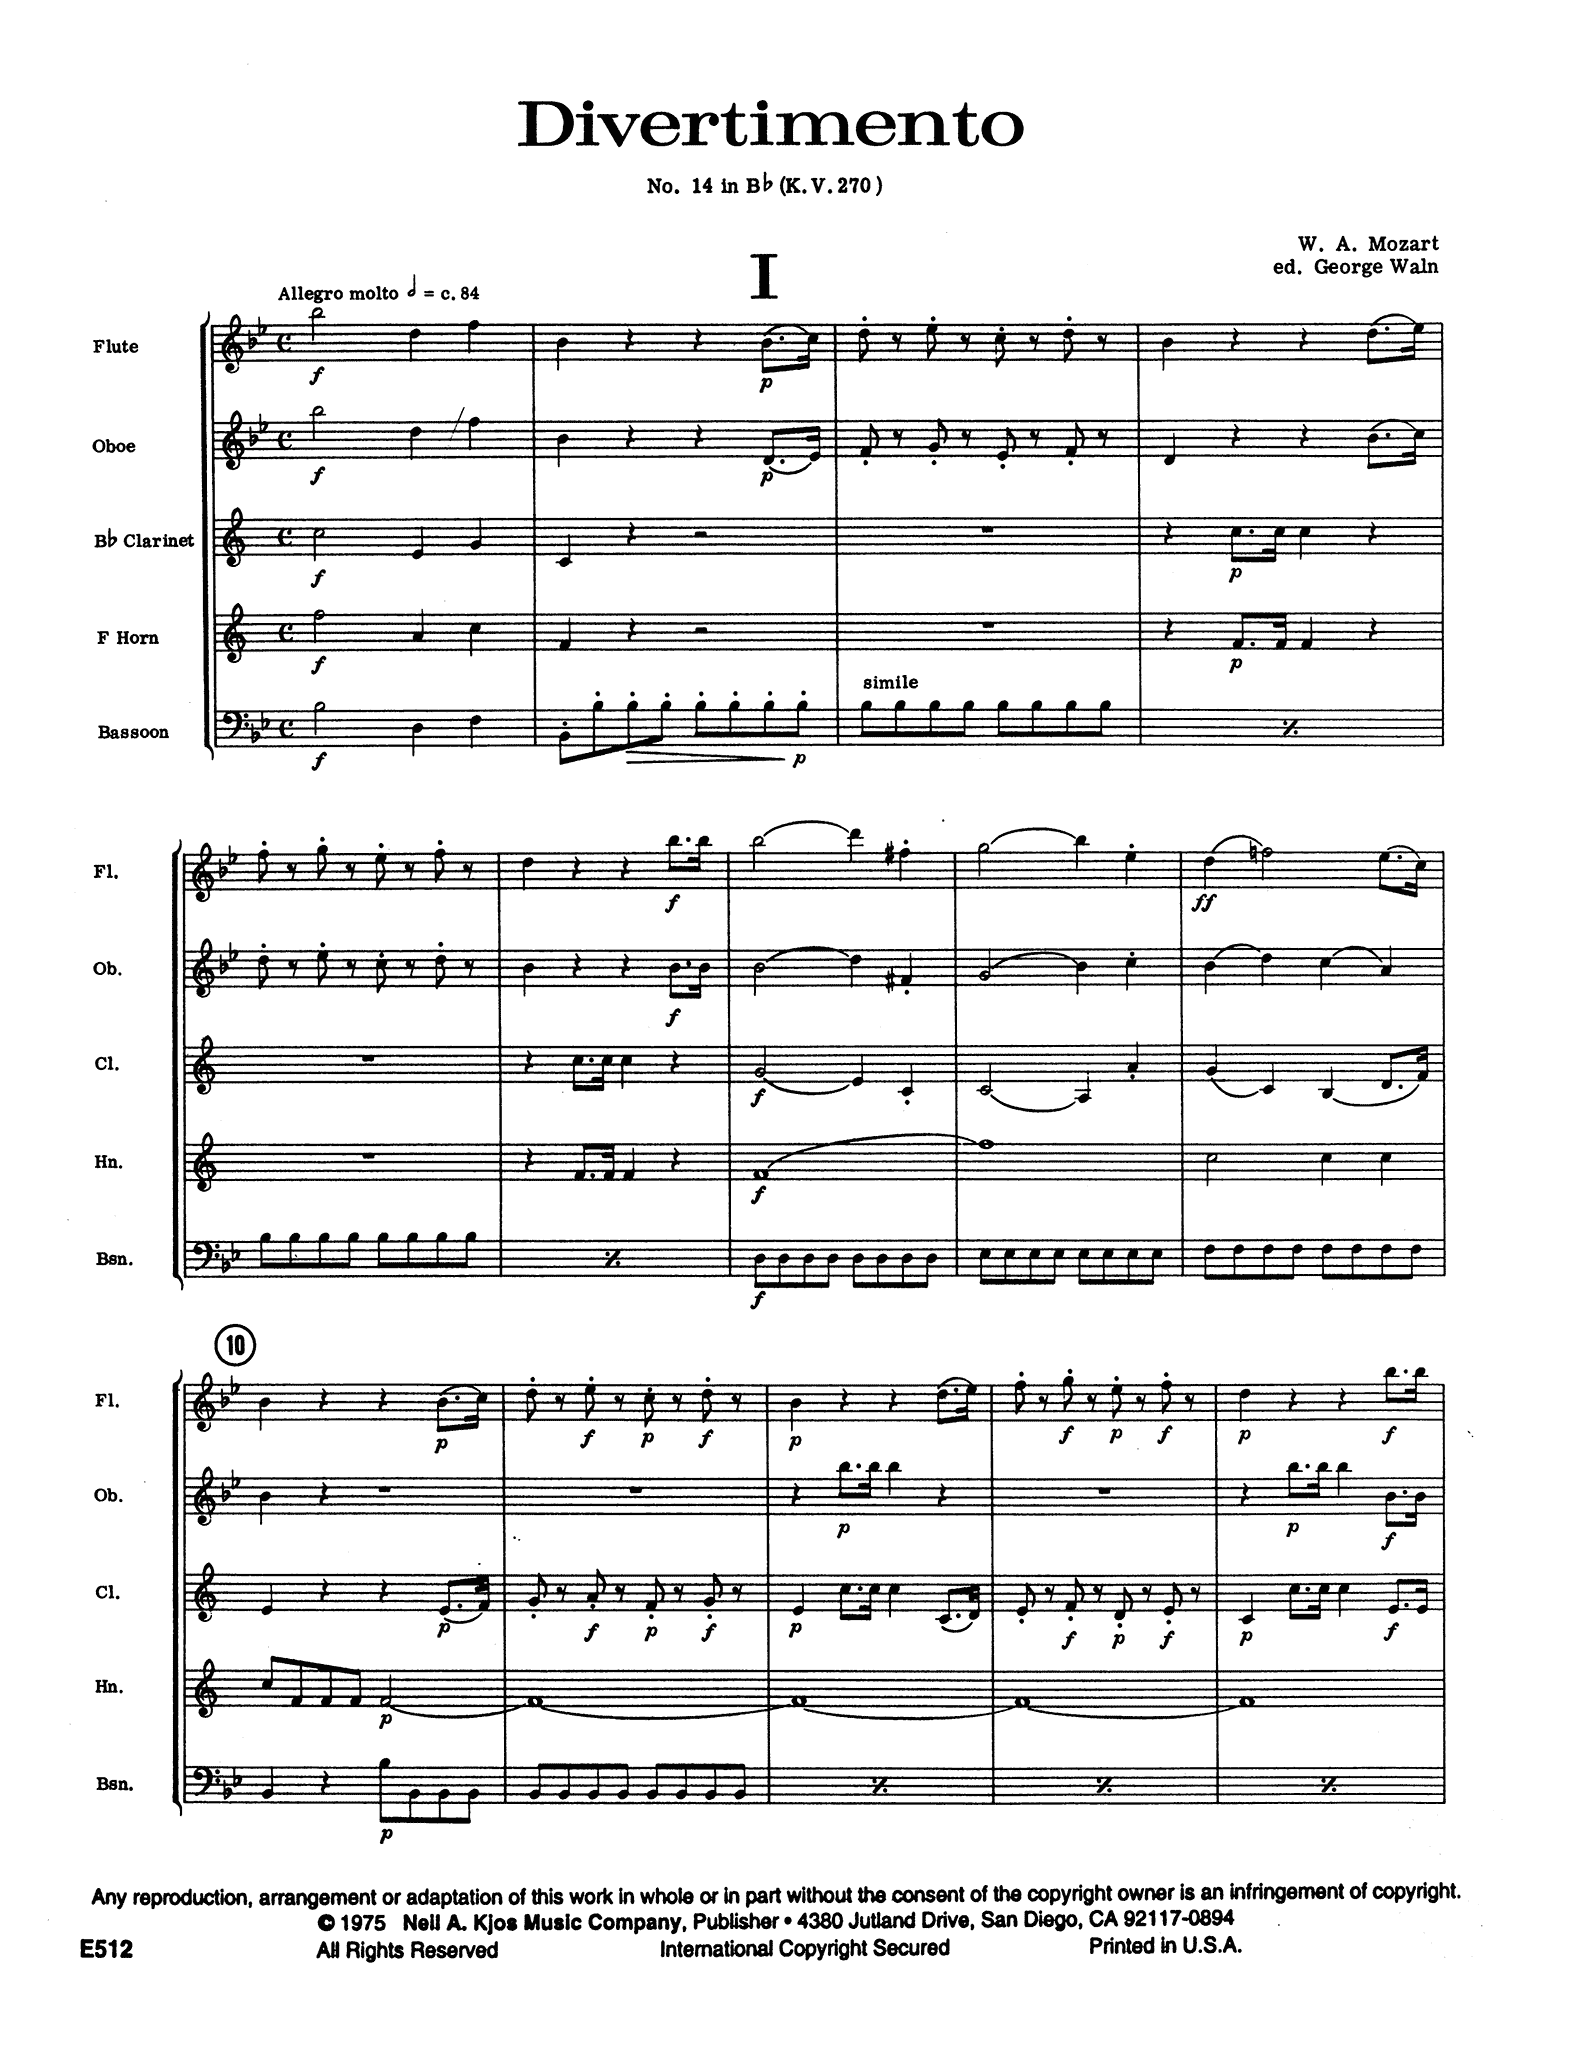 Mozart Divertimento No. 14, K. 270 wind quintet arrangement - Movement 1